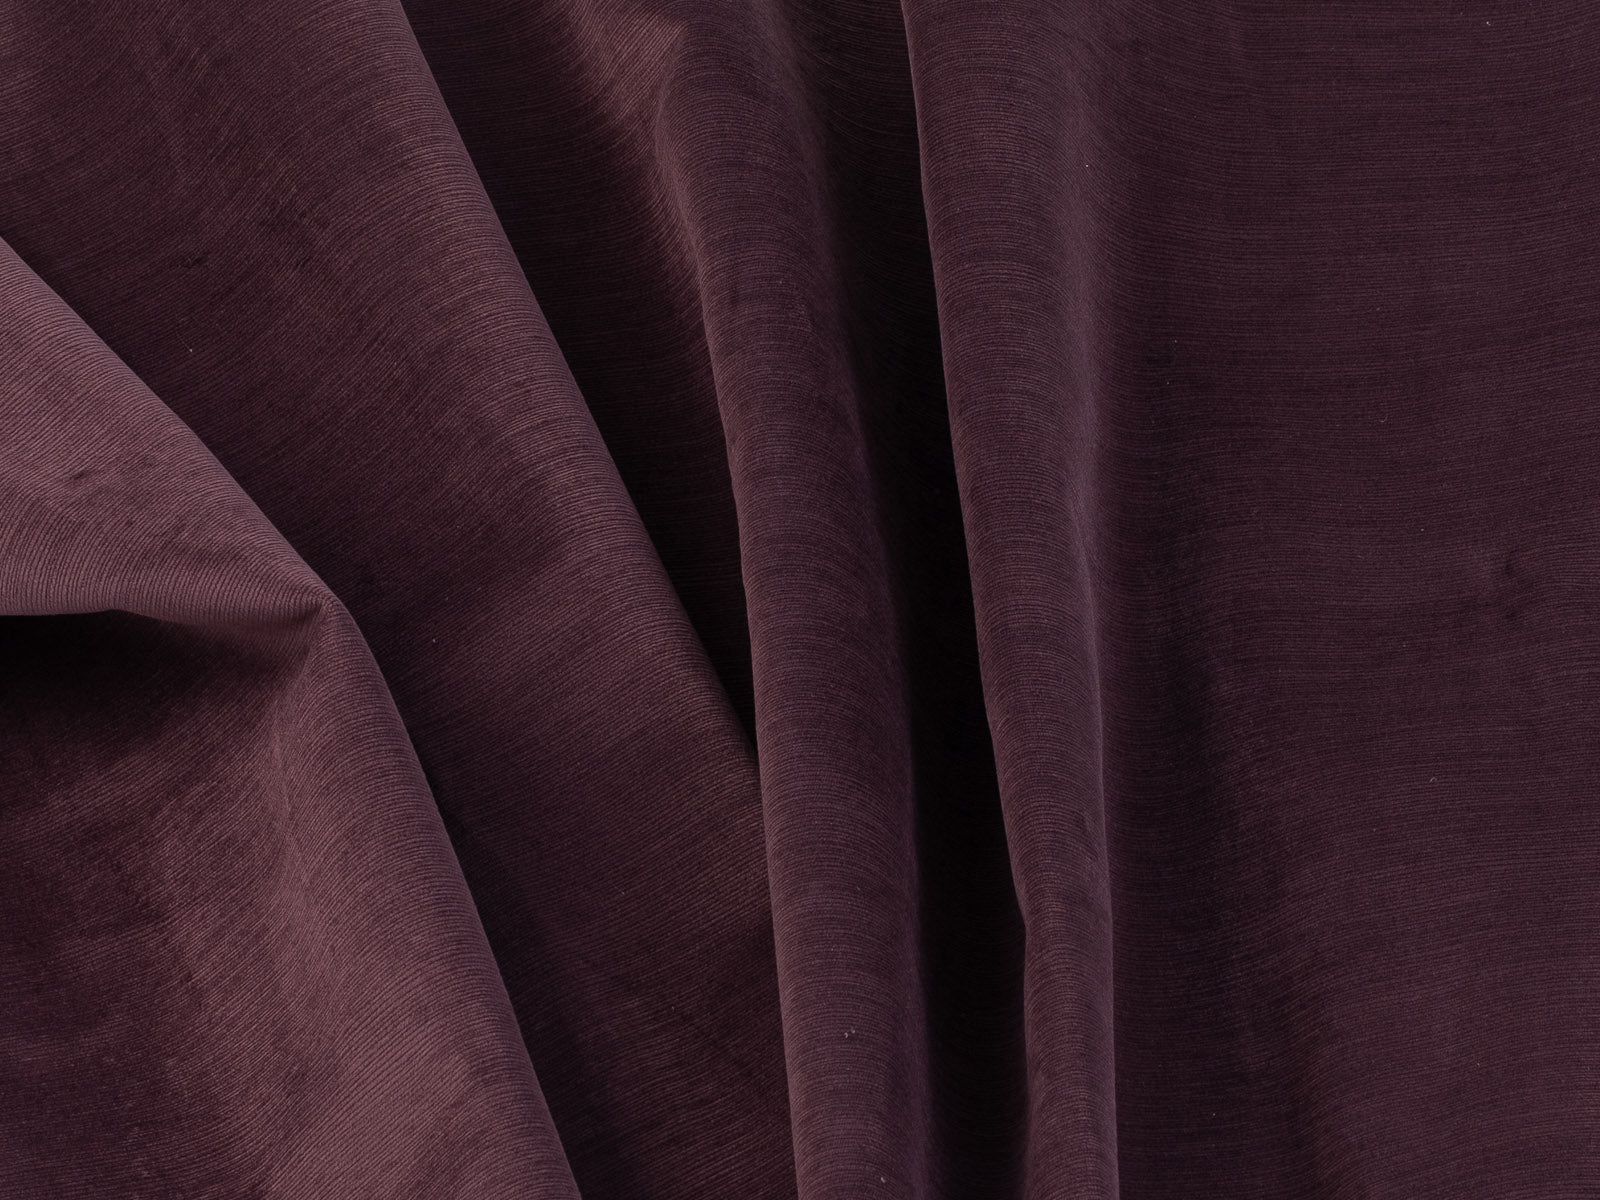 Sillon Aux Donut #Color_Purple"T2658"